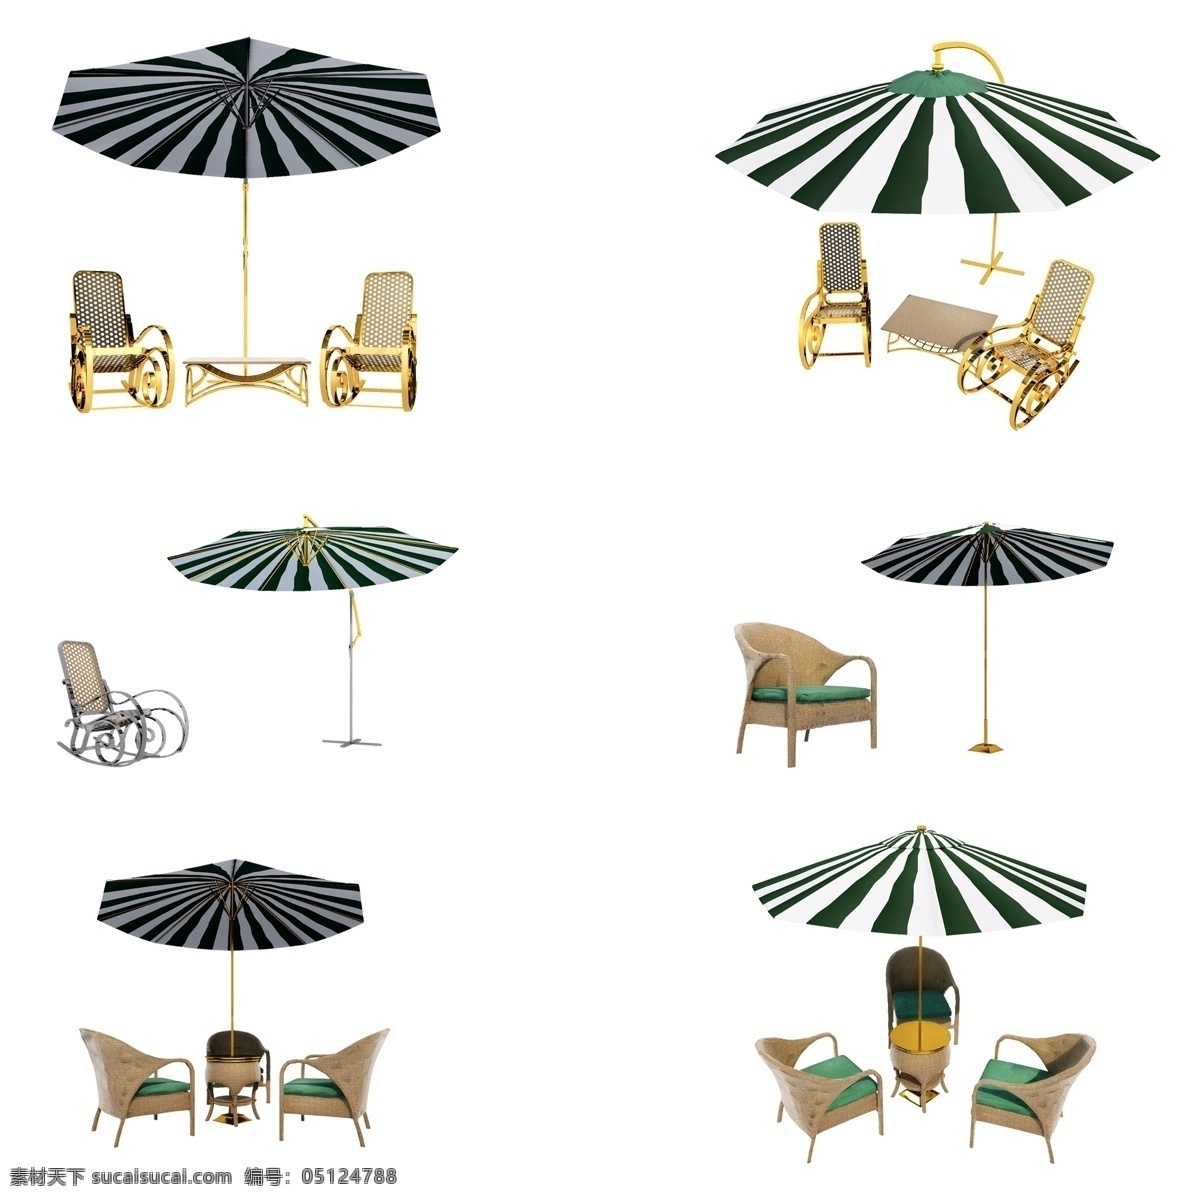 夏季 遮阳 伞套 图 座椅 防晒 精致 质感 仿真 户外 遮阳伞 套图